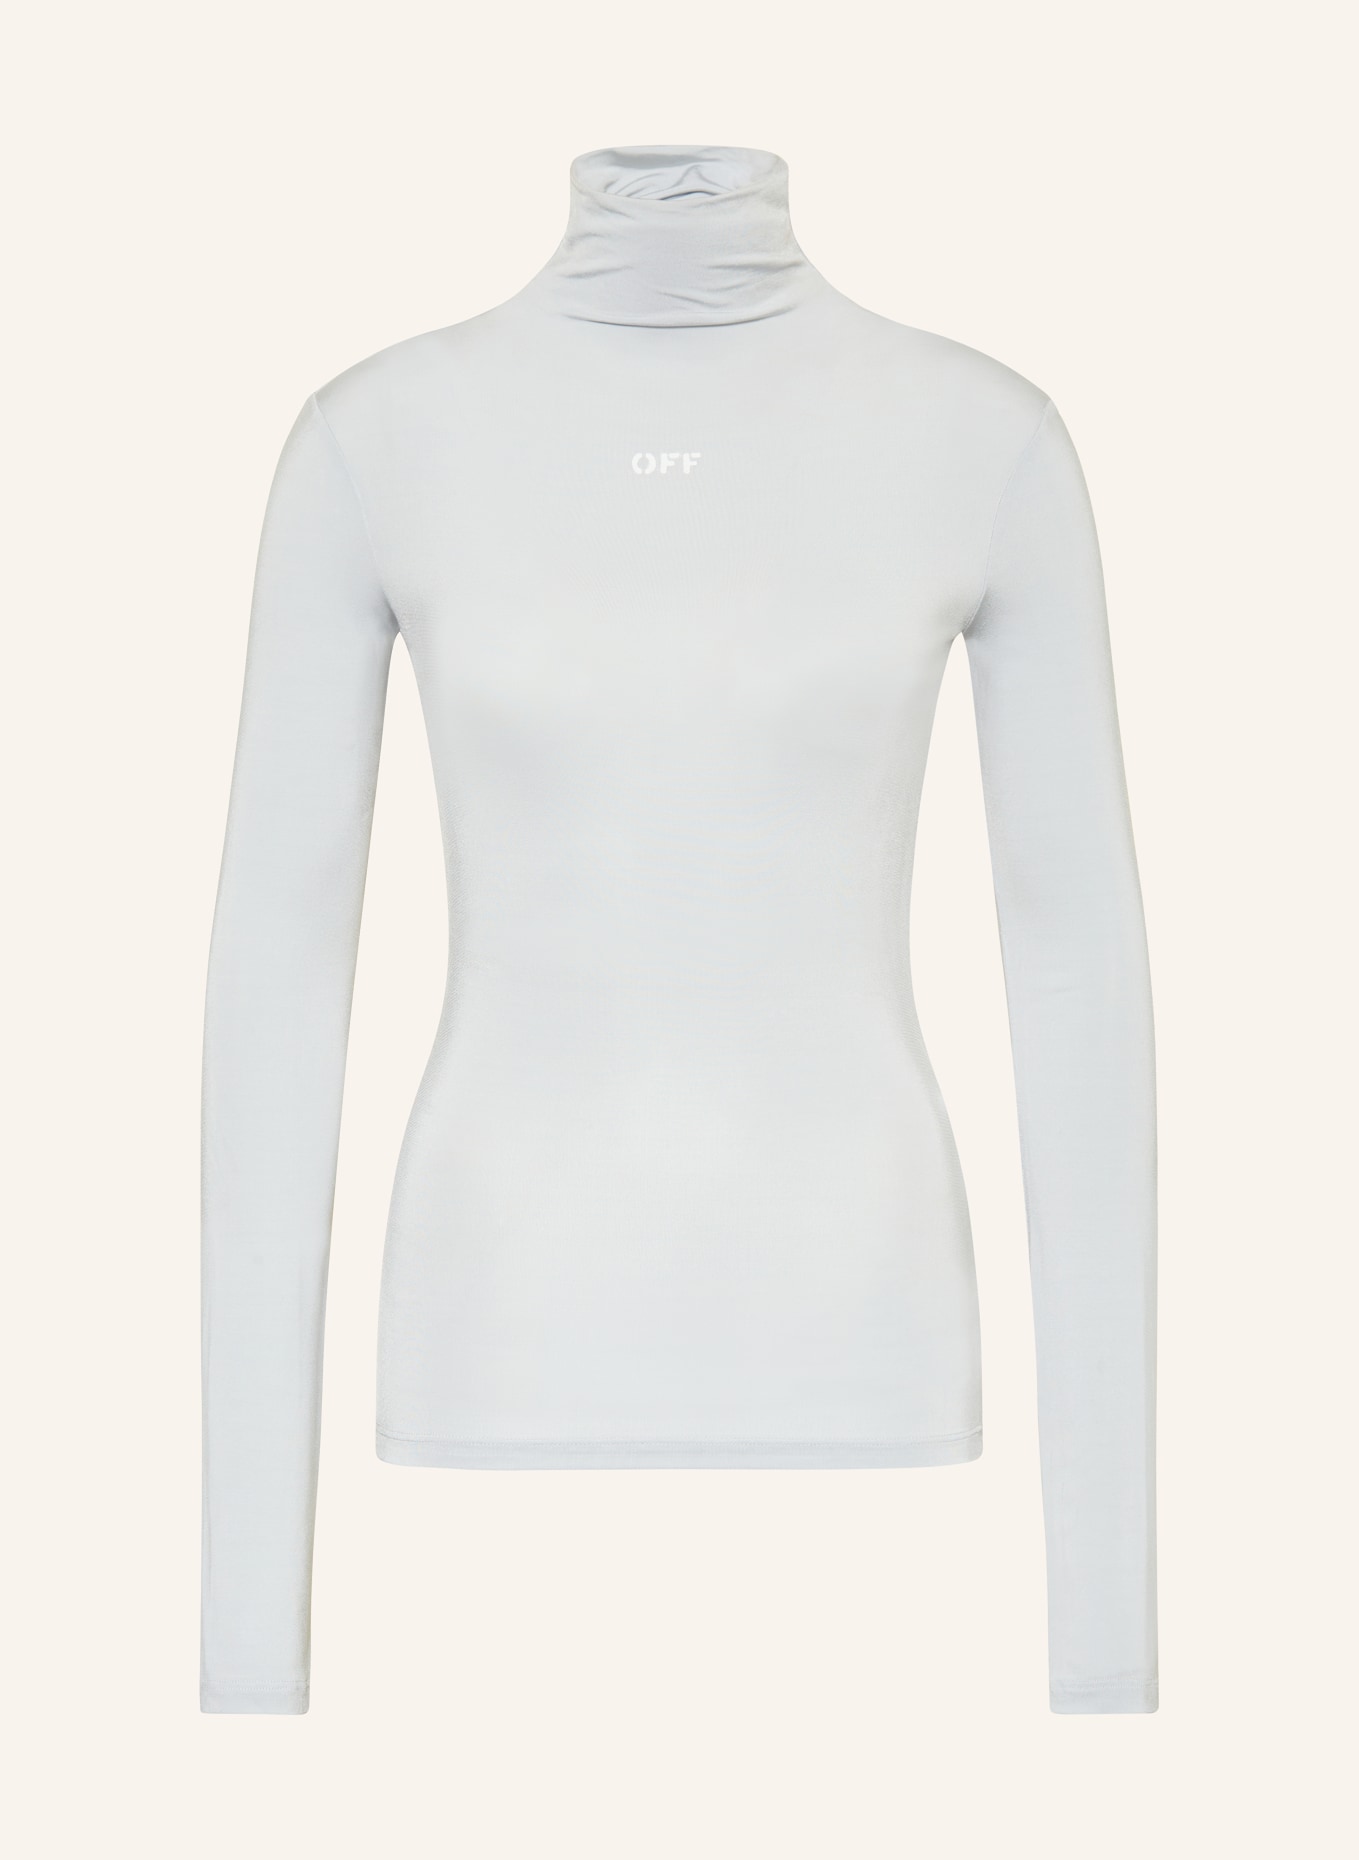 Off-White Turtleneck shirt, Color: LIGHT BLUE (Image 1)